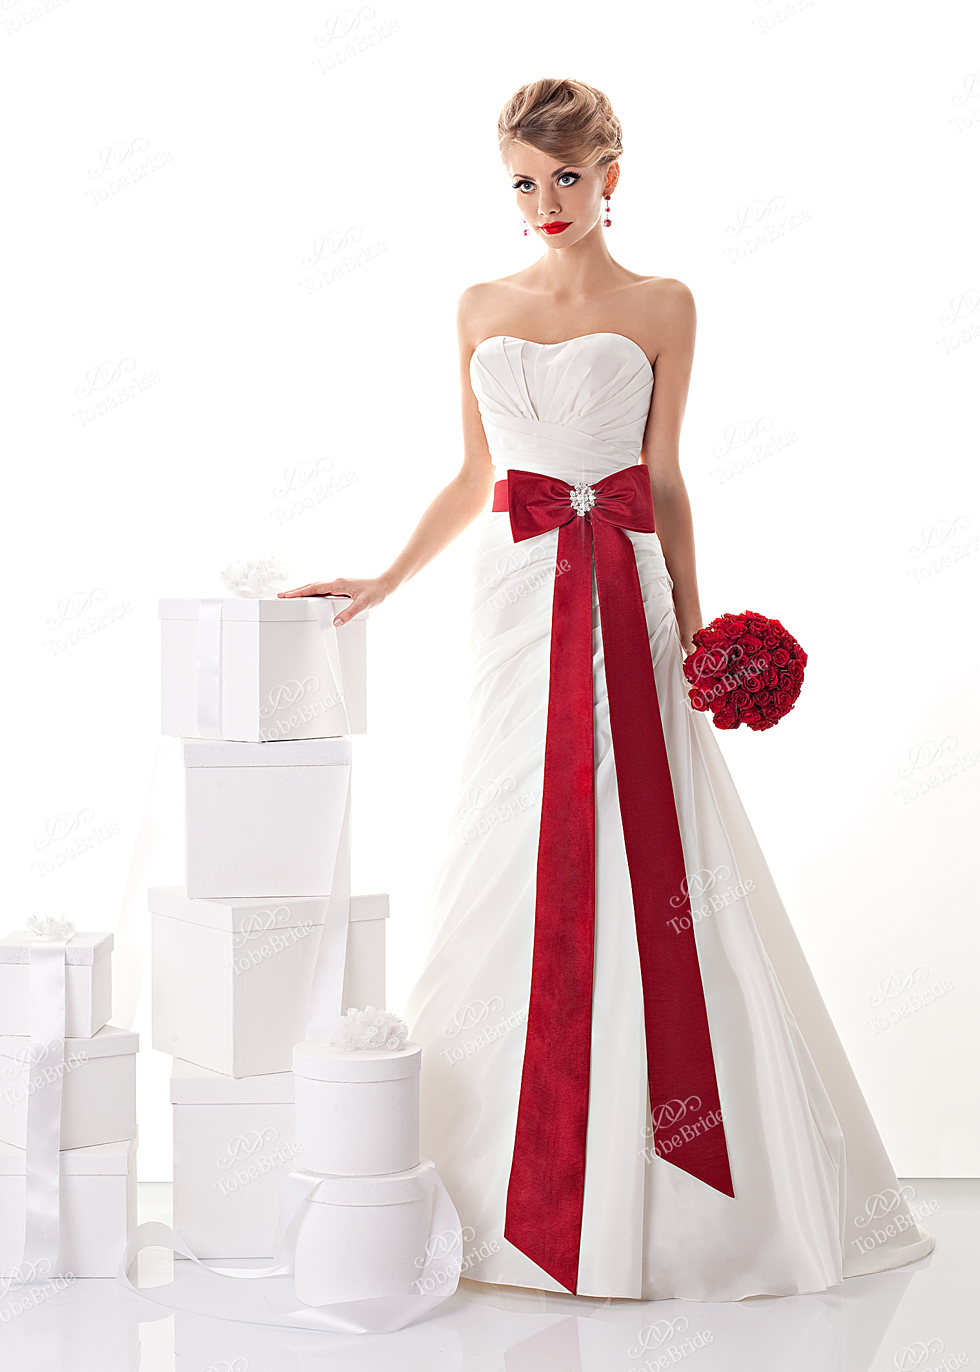 Платье с красным поясом. Свадебное платье с0139 to be Bride. Свадебное платье белое с красным. Белое свадебное платье с красным поясом. Свадебные платья красного цвета.